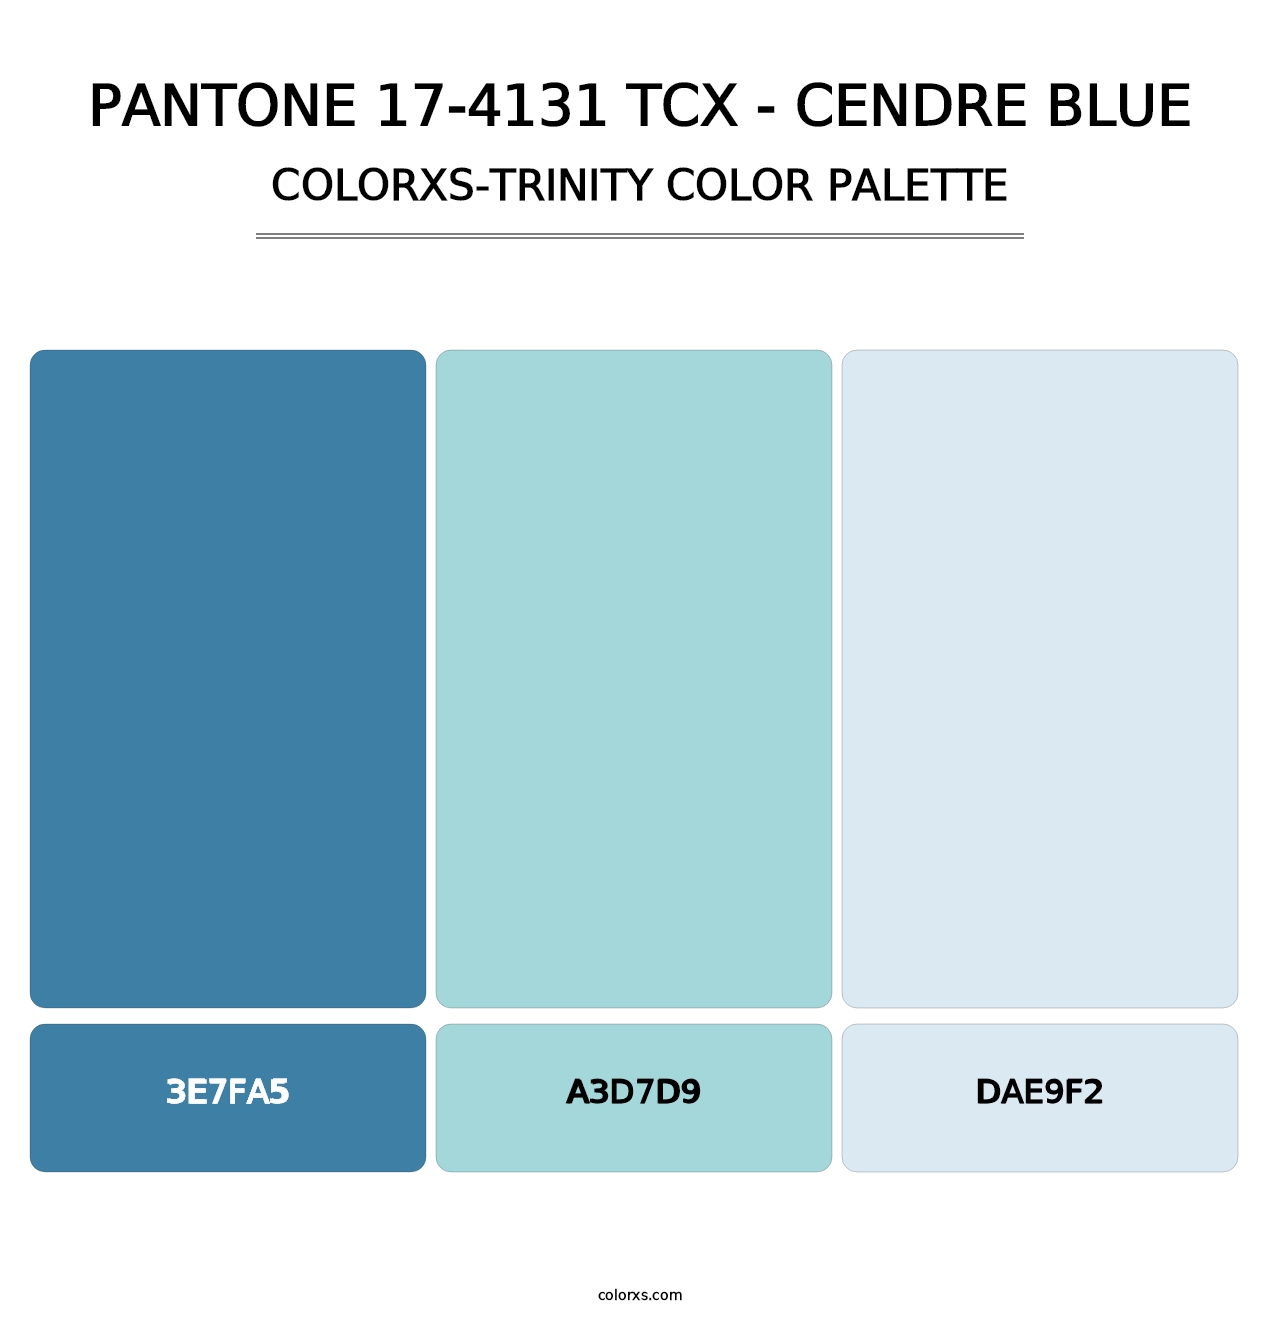 PANTONE 17-4131 TCX - Cendre Blue - Colorxs Trinity Palette